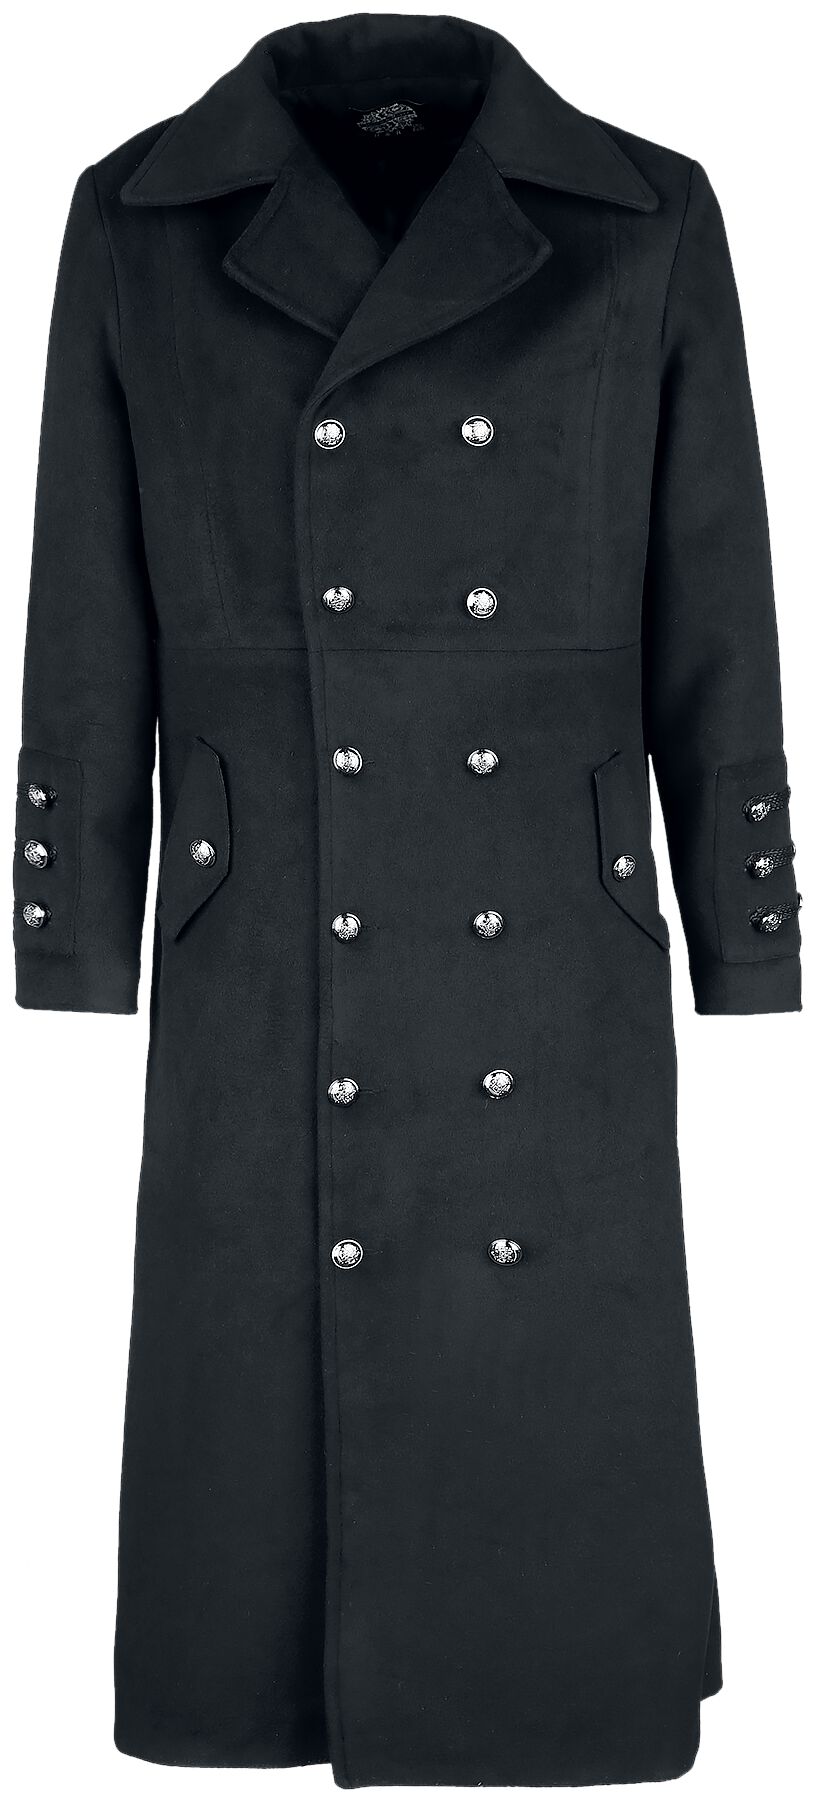 Image of Cappotto invernale Gothic di H&R London - Classic Military Coat - L a XL - Uomo - nero